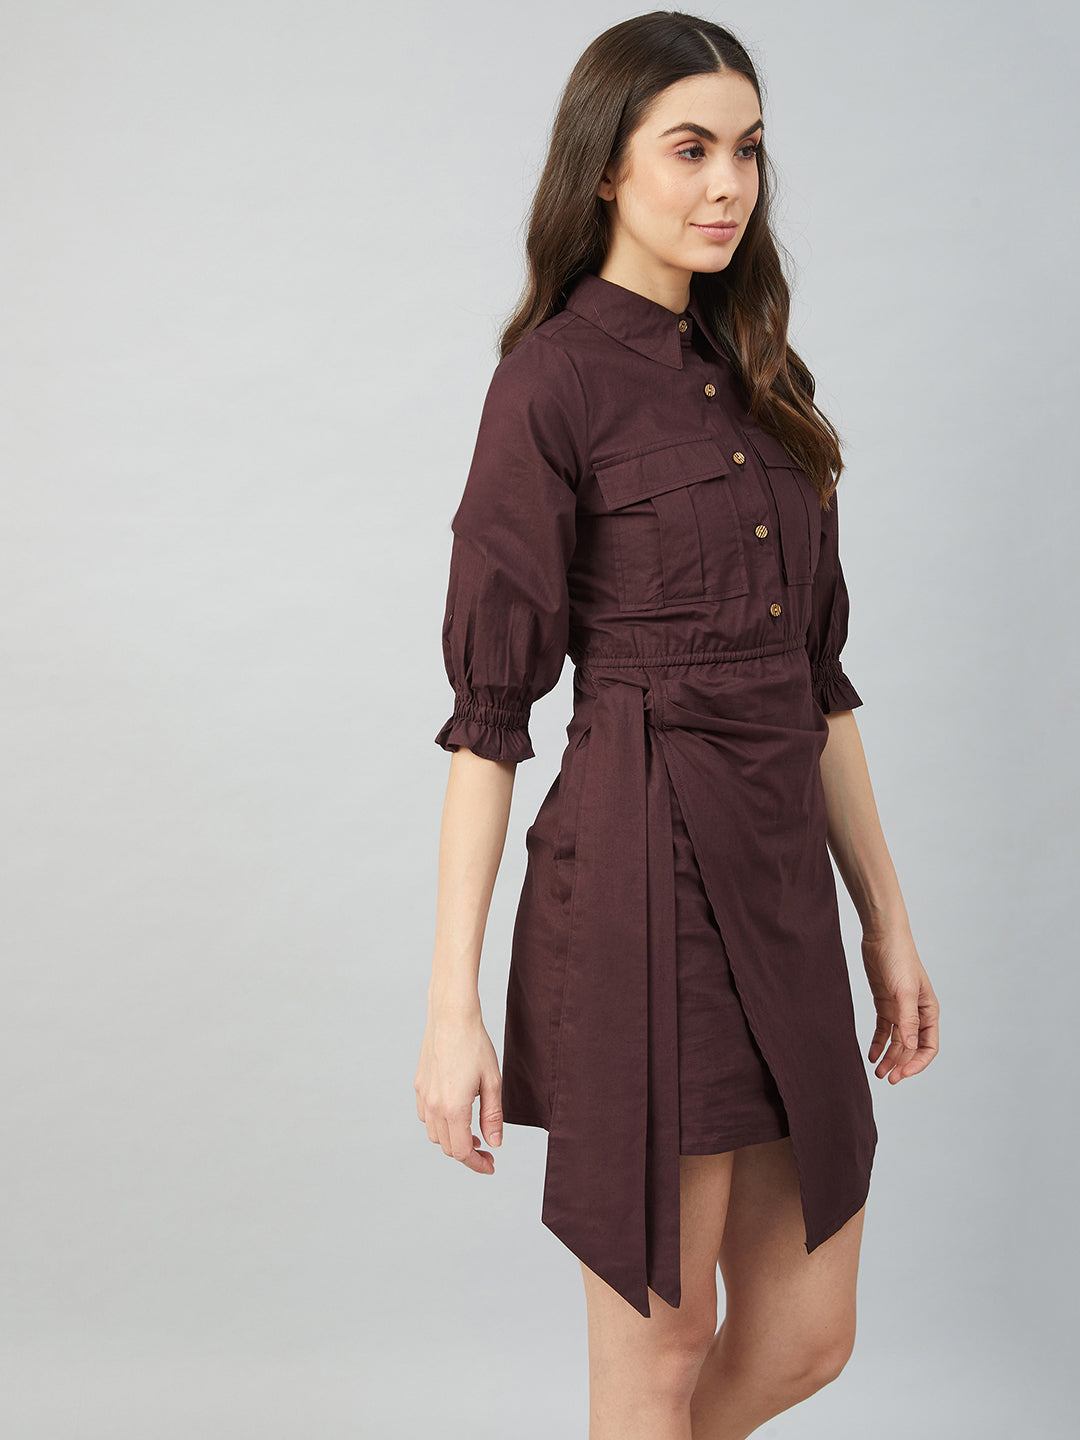 Athena Women Brown Cotton Wrap Dress with Front Pocket Detail - Athena Lifestyle